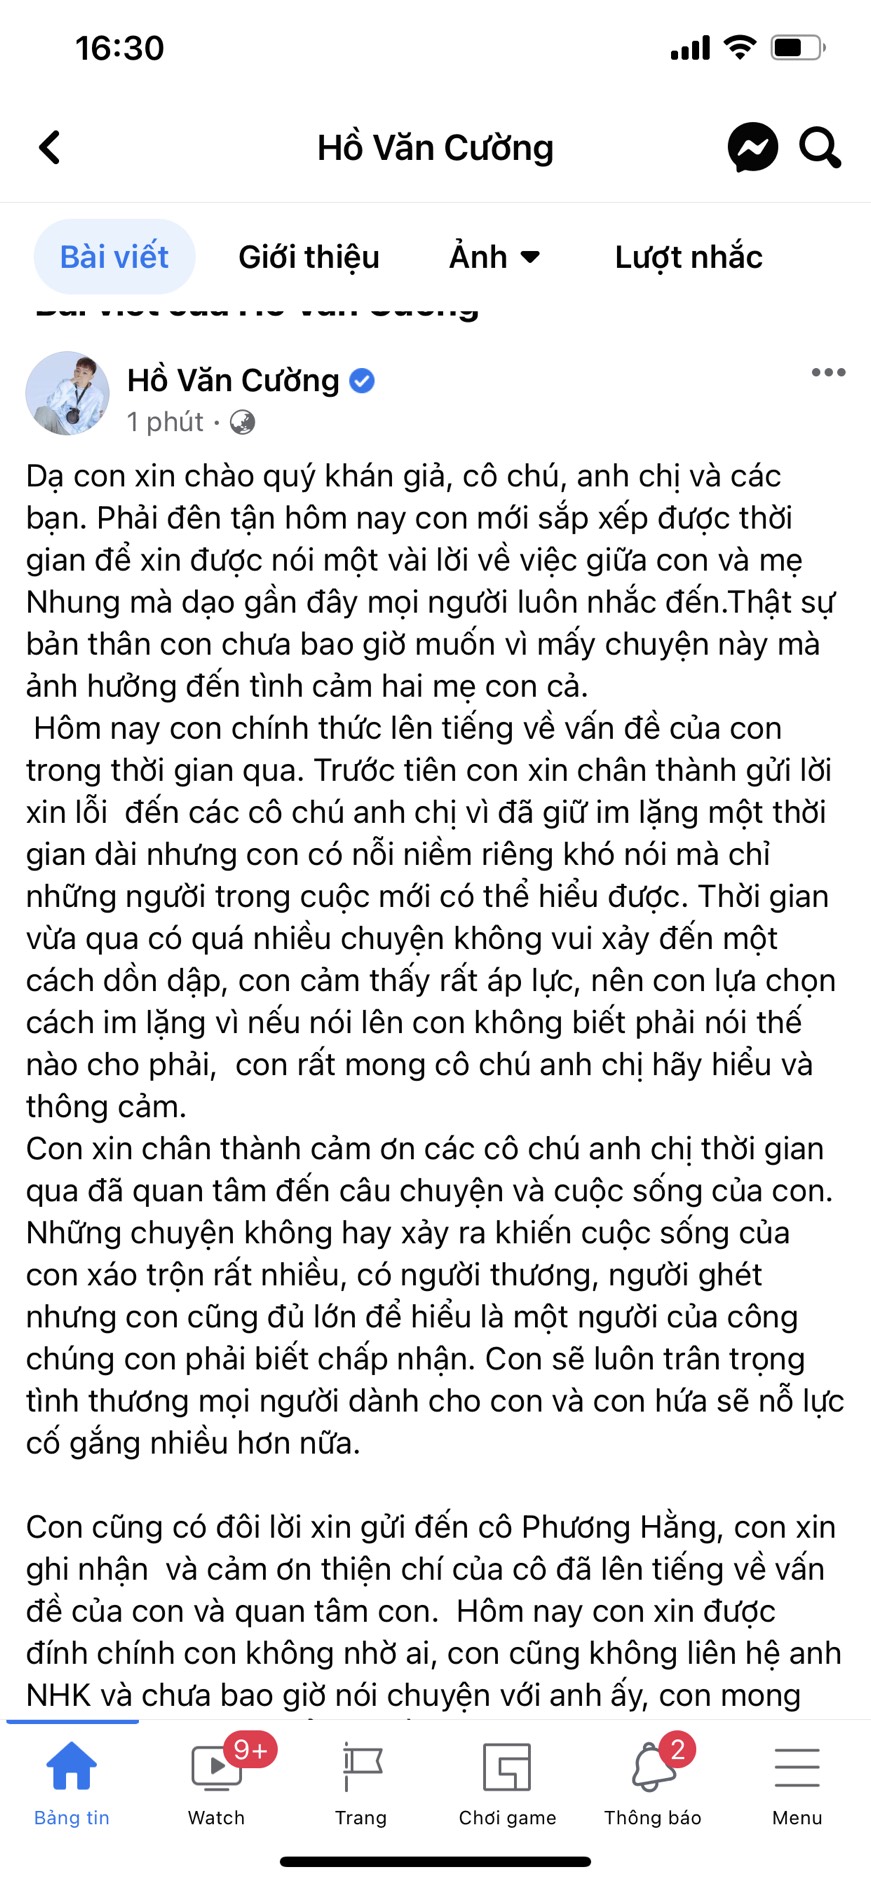  Bài viết của Hồ Văn Cường trong ngày 11/10, xác nhận 'đường ai nấy đi' với công ty mẹ nuôi